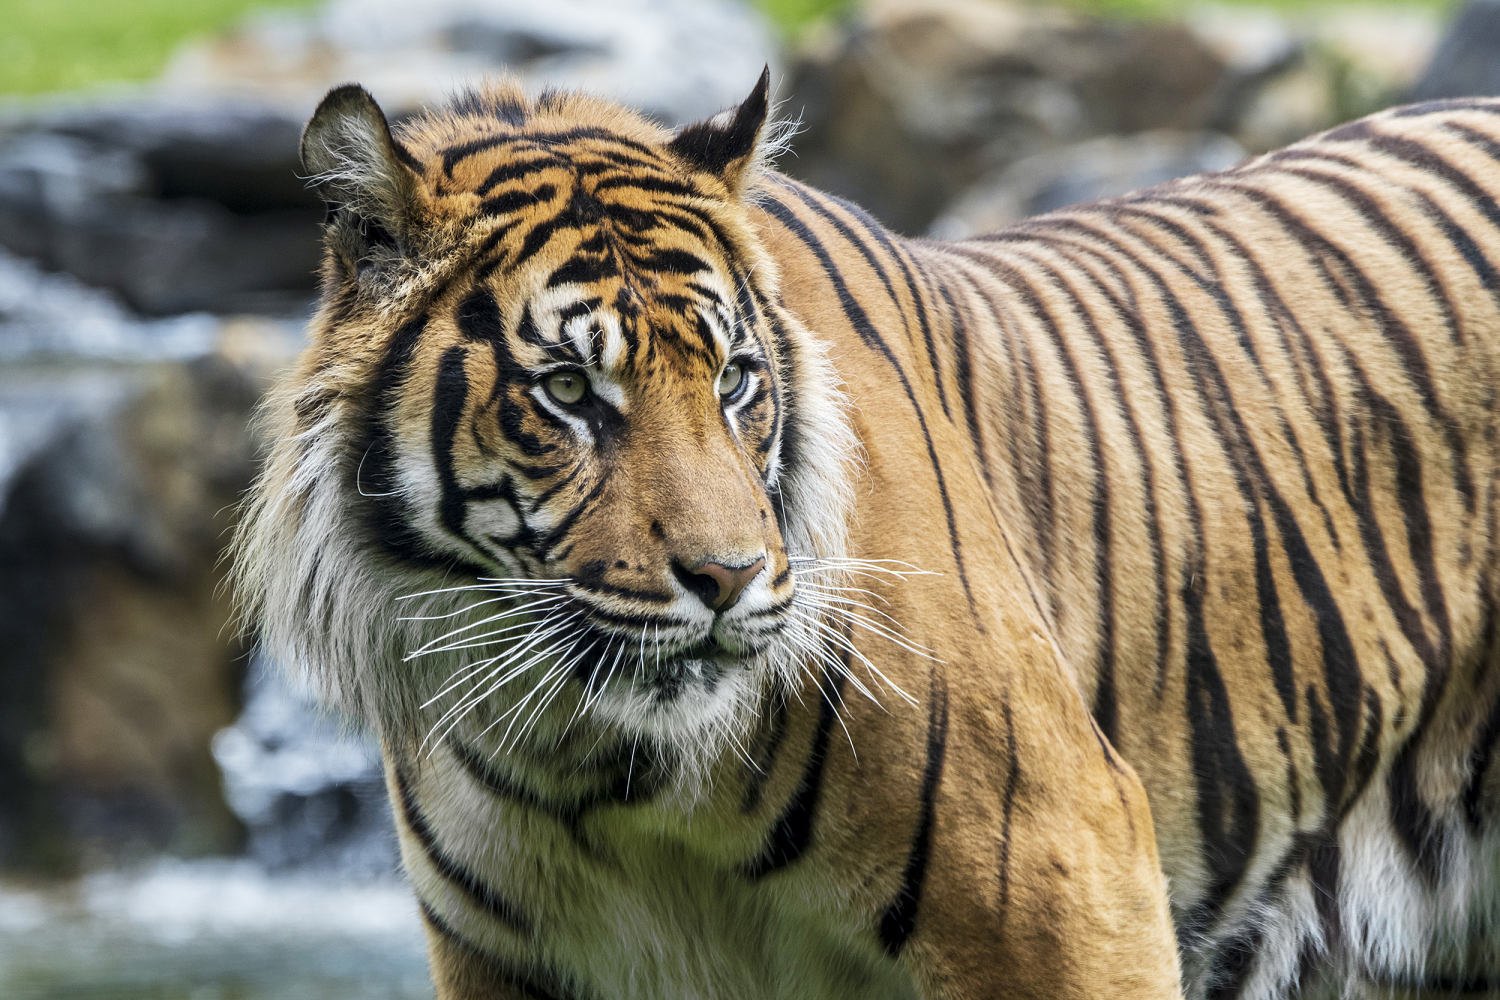 Indonesia seeks more proof that Javan tiger may no longer be extinct